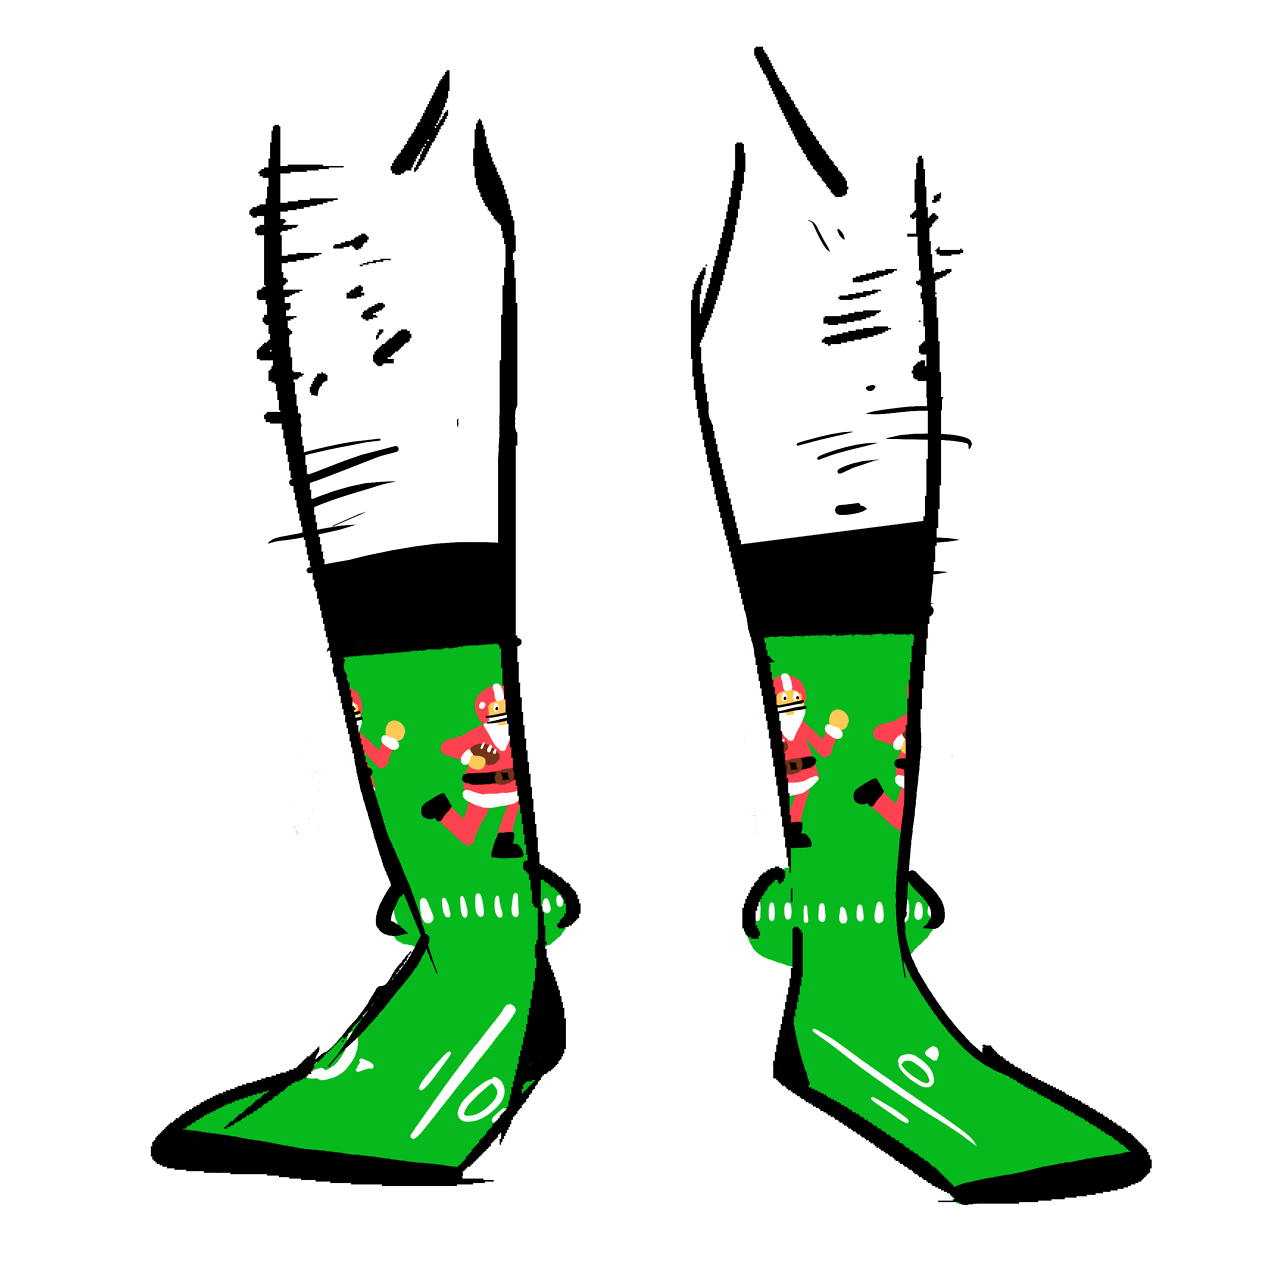 Socks showing Santa Claus playing football